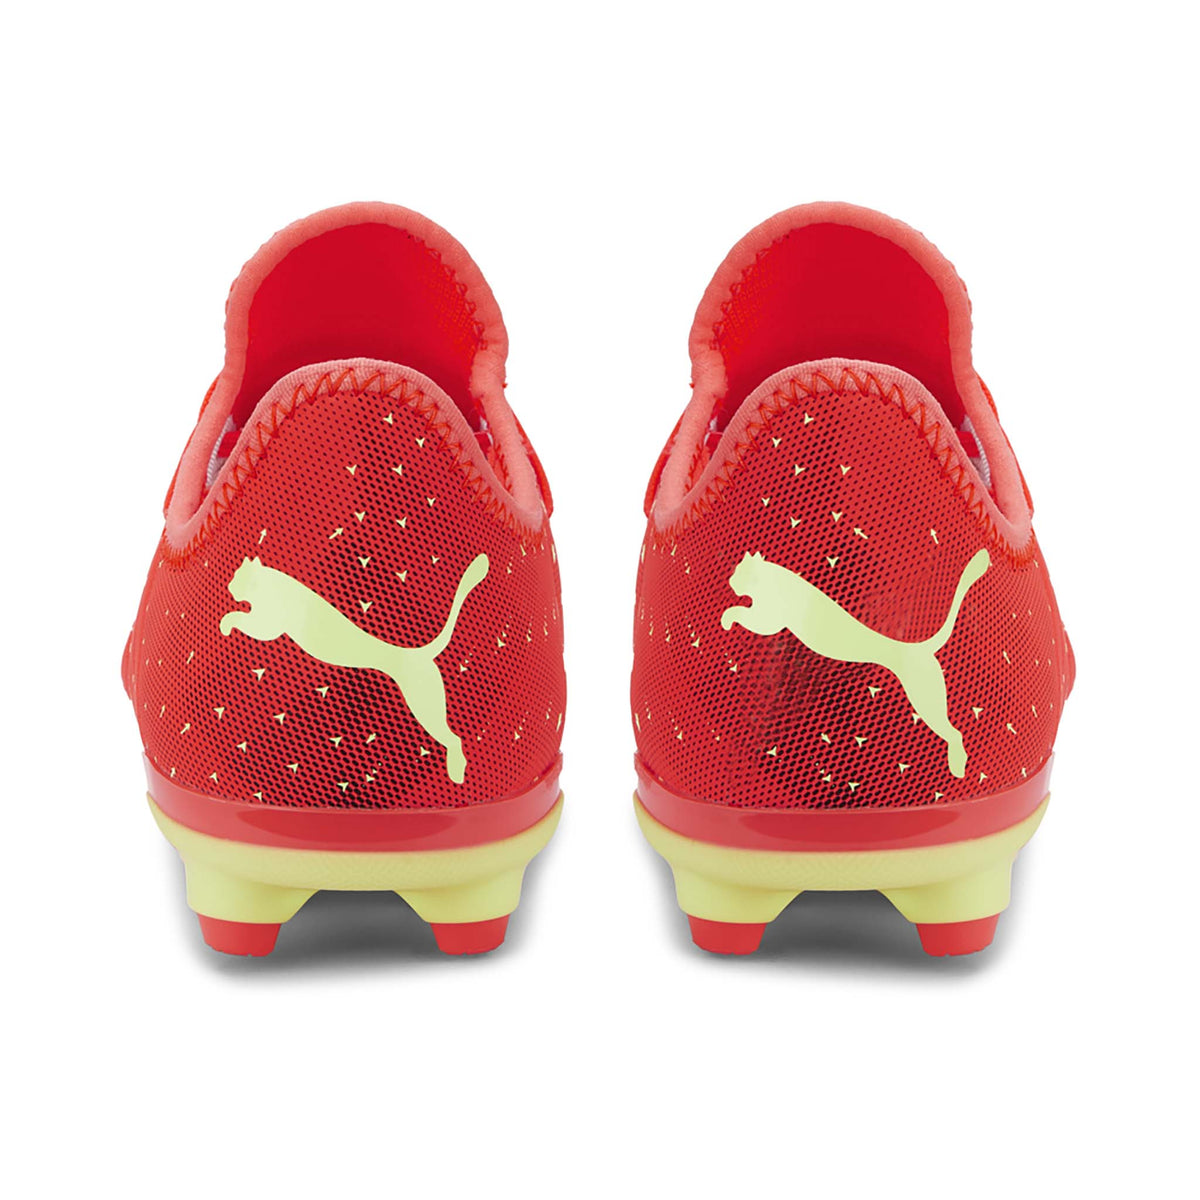 Puma Future Z 4.4 FG/AG junior souliers de soccer fiery coral talons